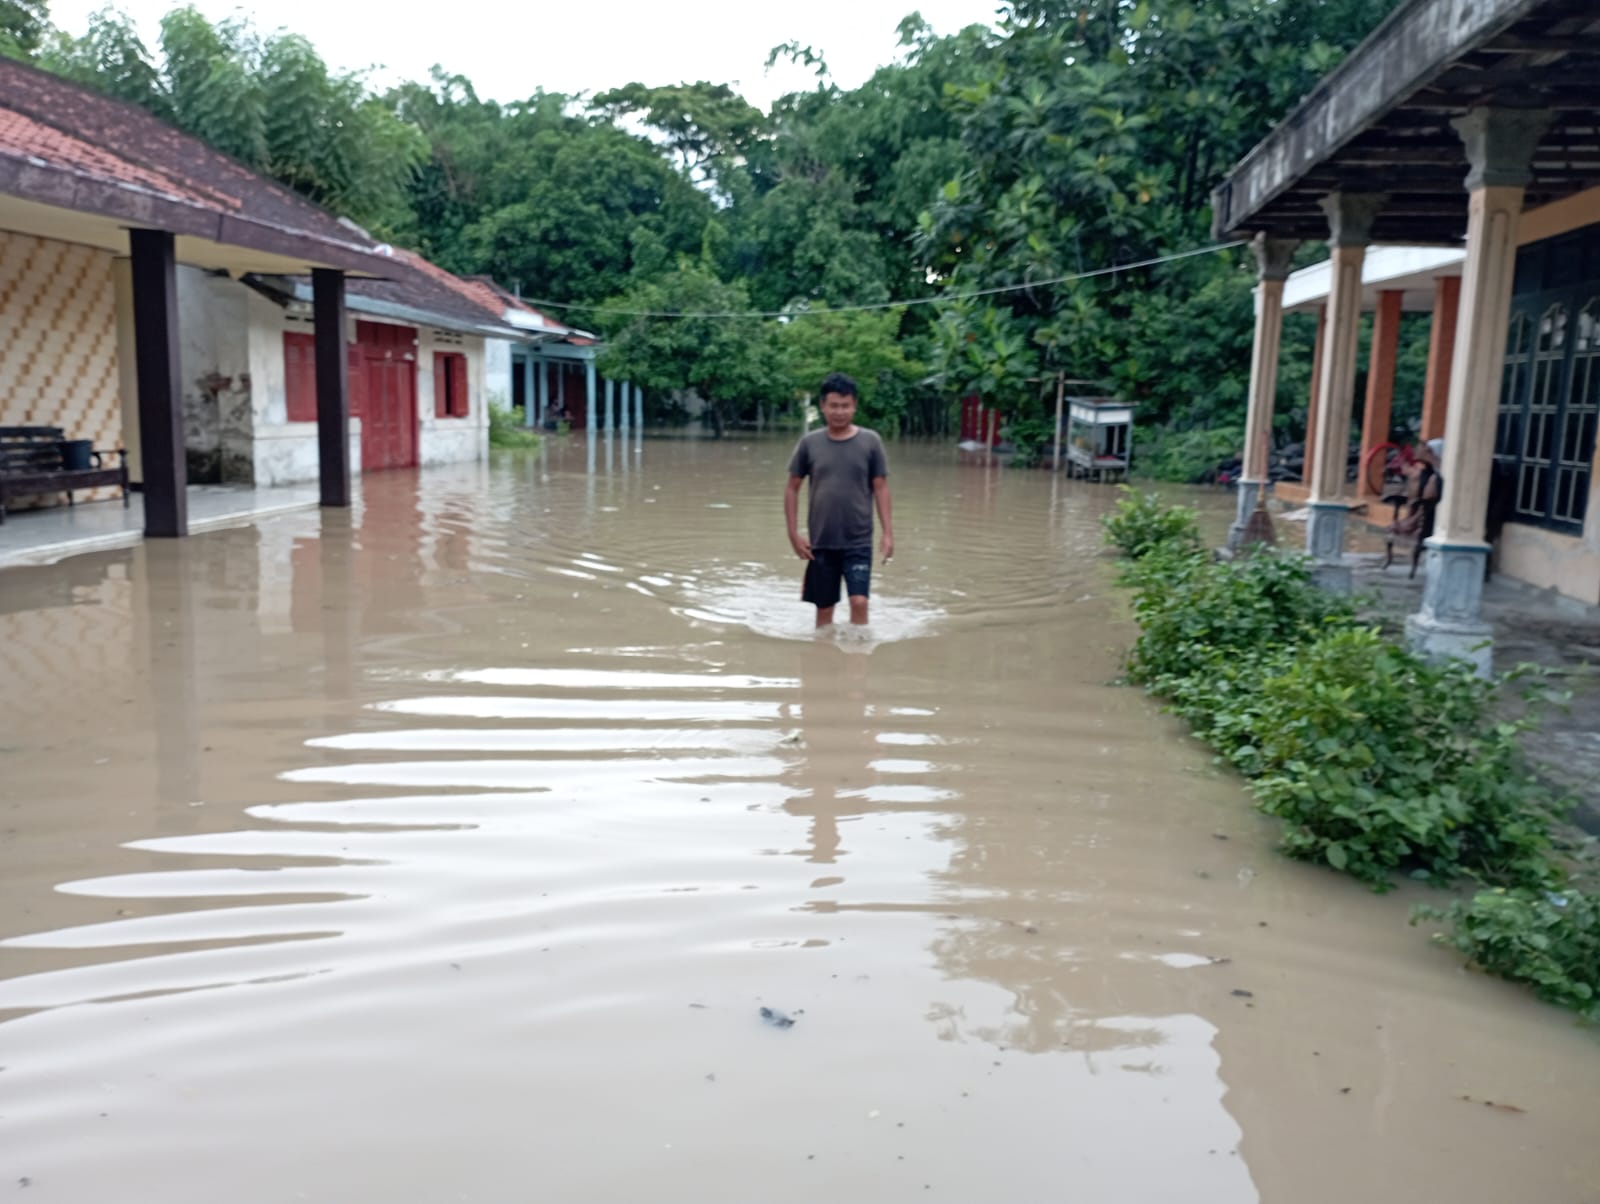 Banjir Merendam Pemukiman Warga di Brebes, 3 KK Bahkan Sempat Mengungsi